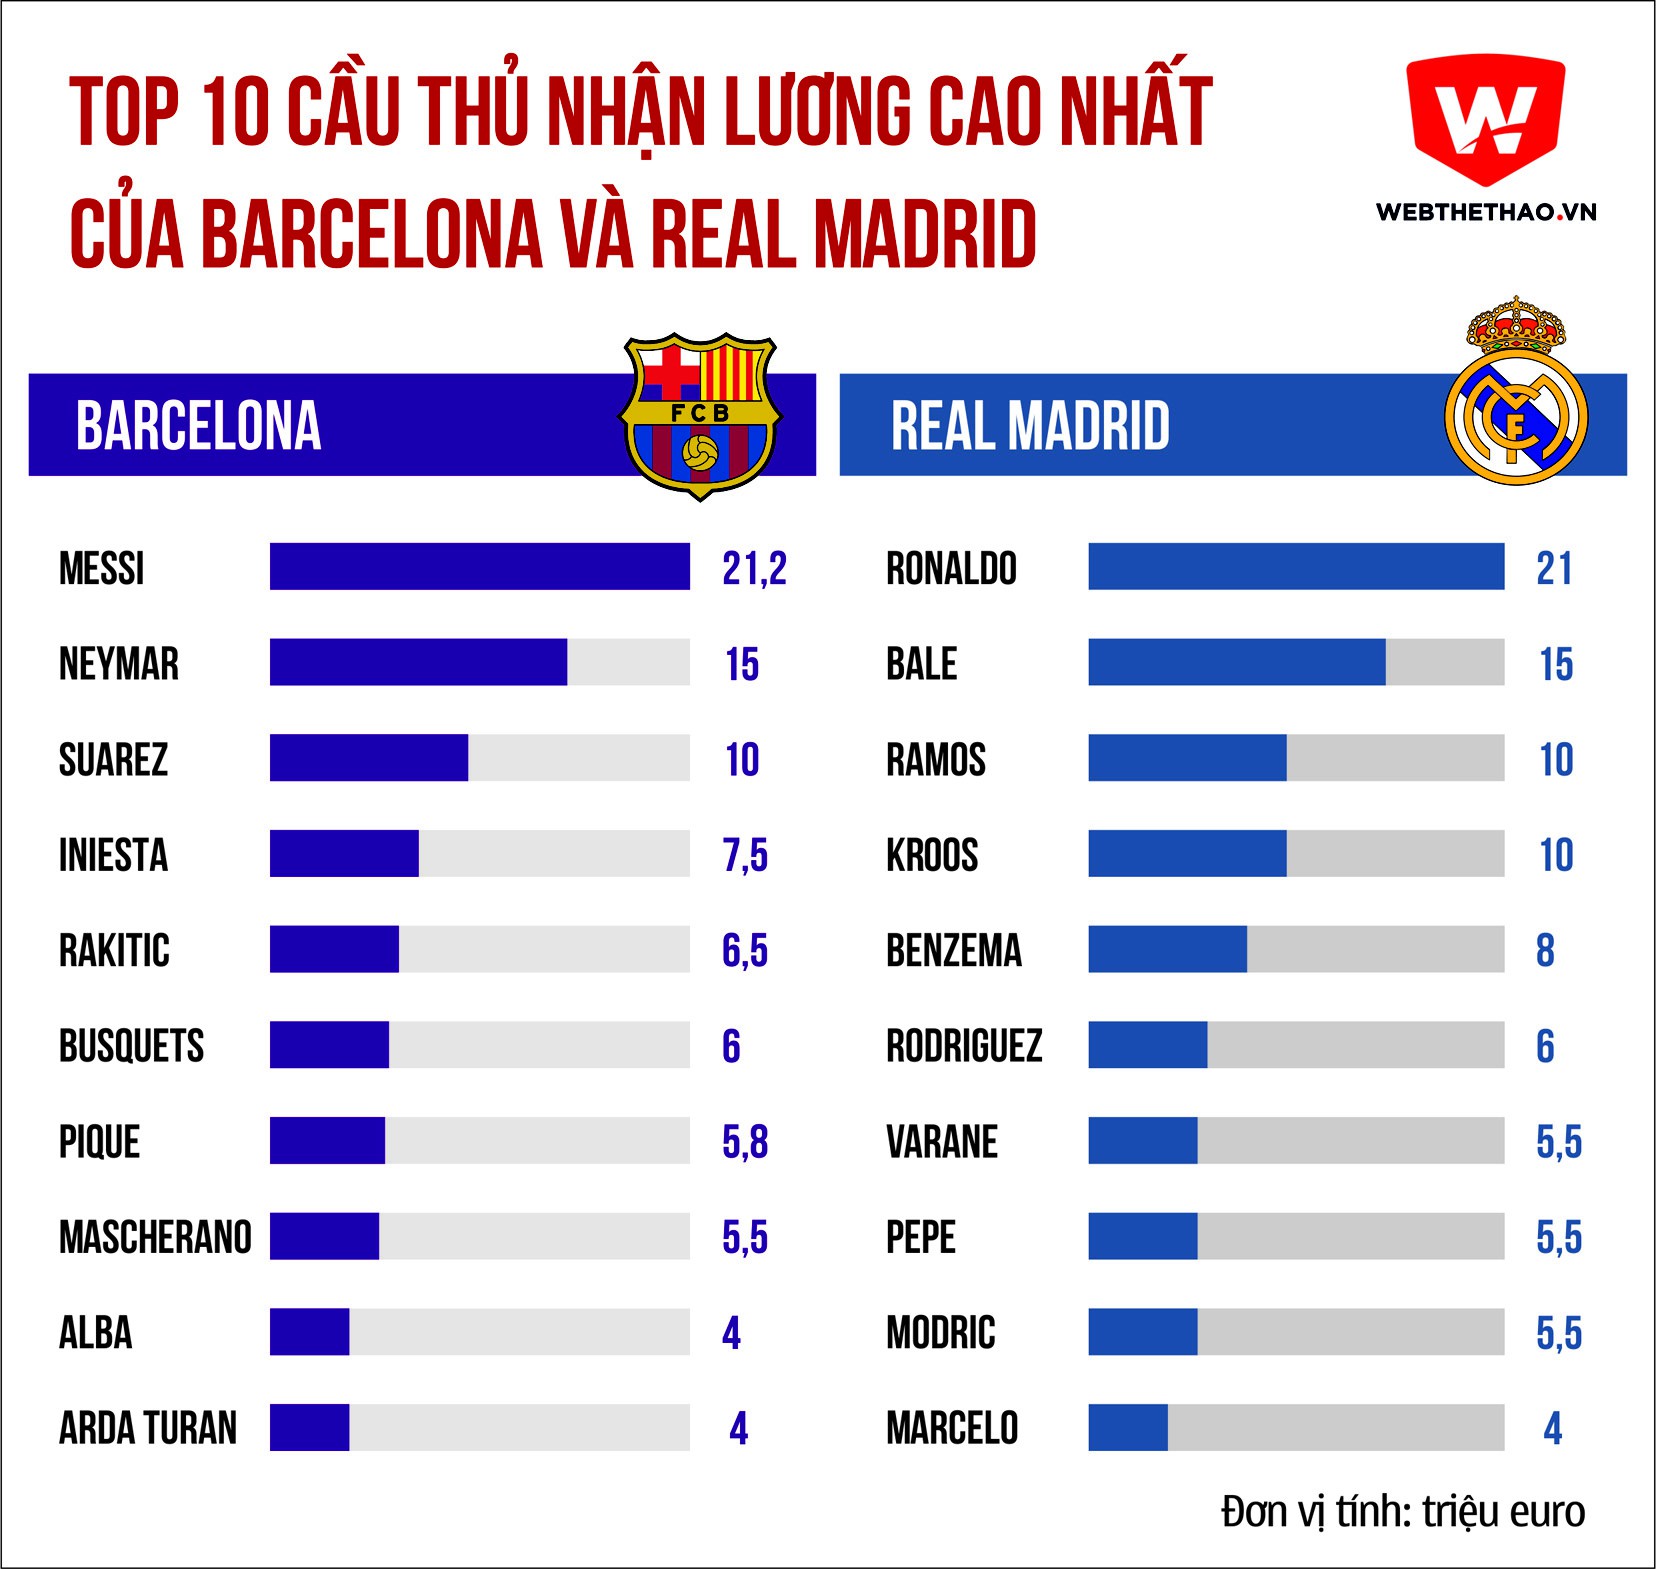 Top 10 cầu thủ nhận lương cao nhất tại Real Madrid và Barcelona